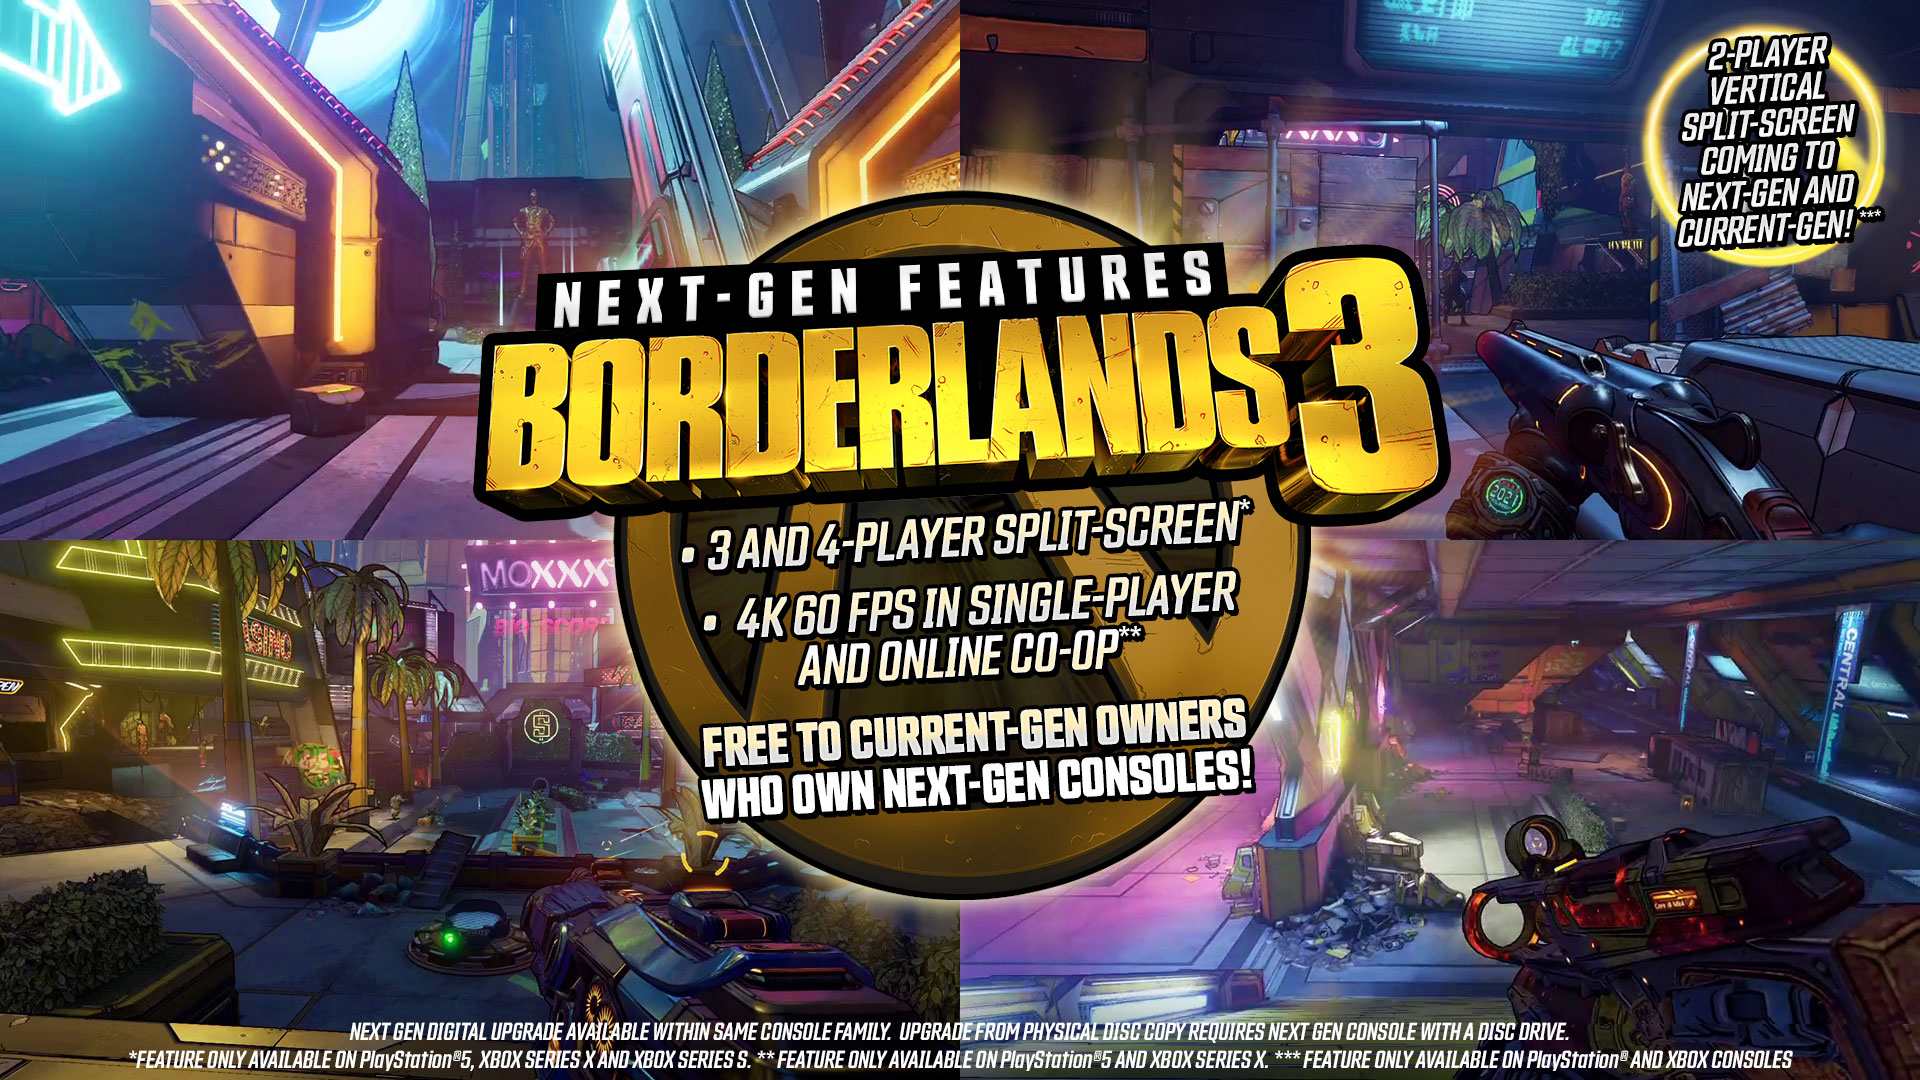 Borderlands 2 live chat room